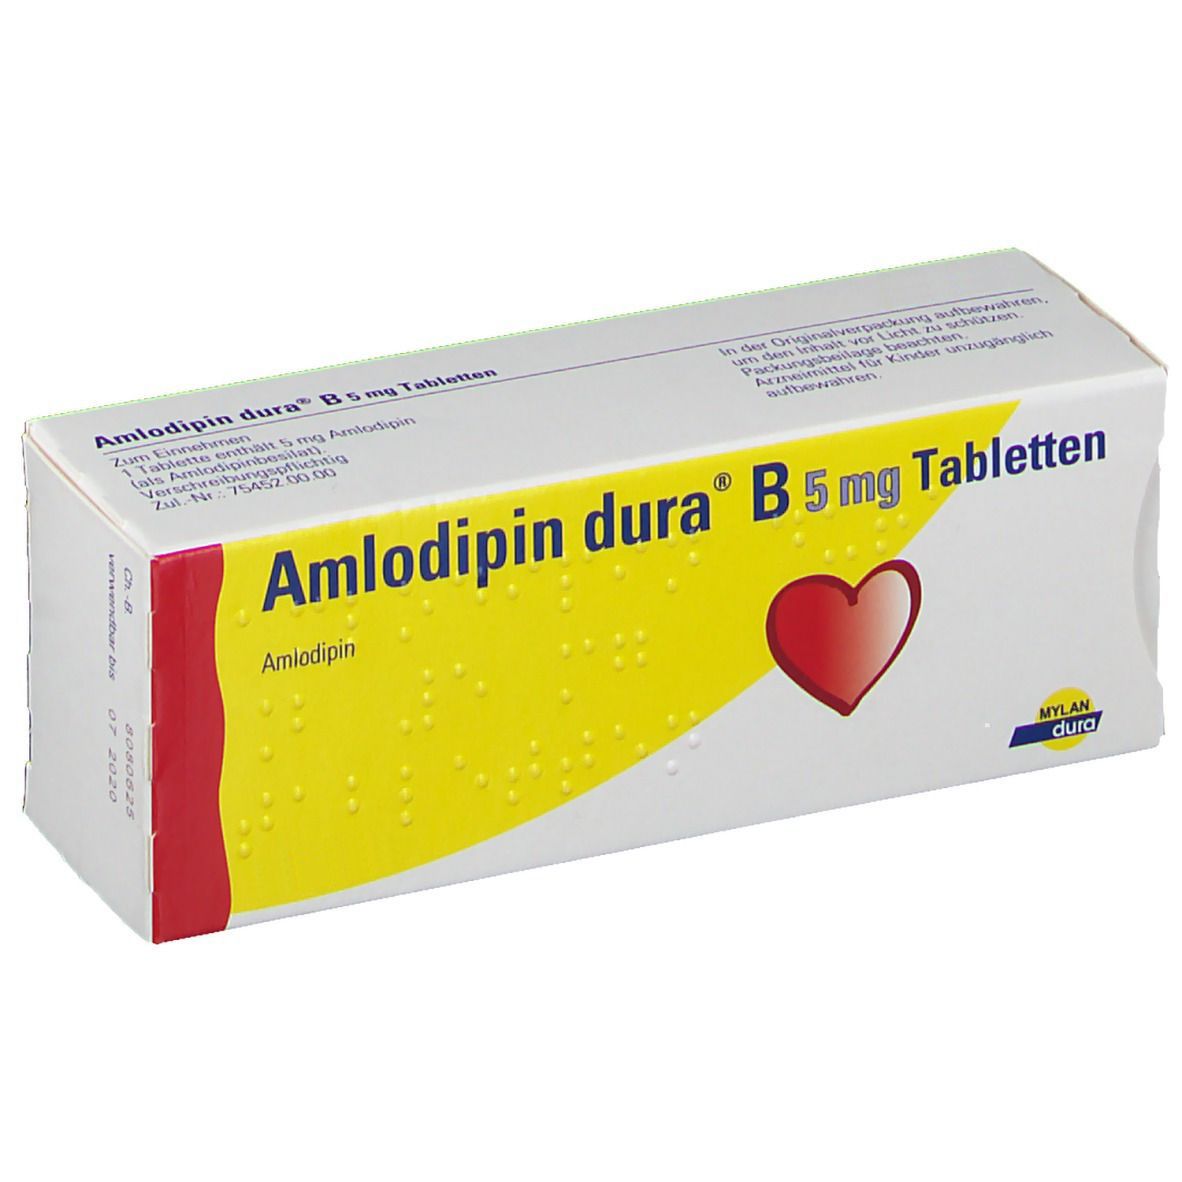 Amlodipin dura® B 5 mg